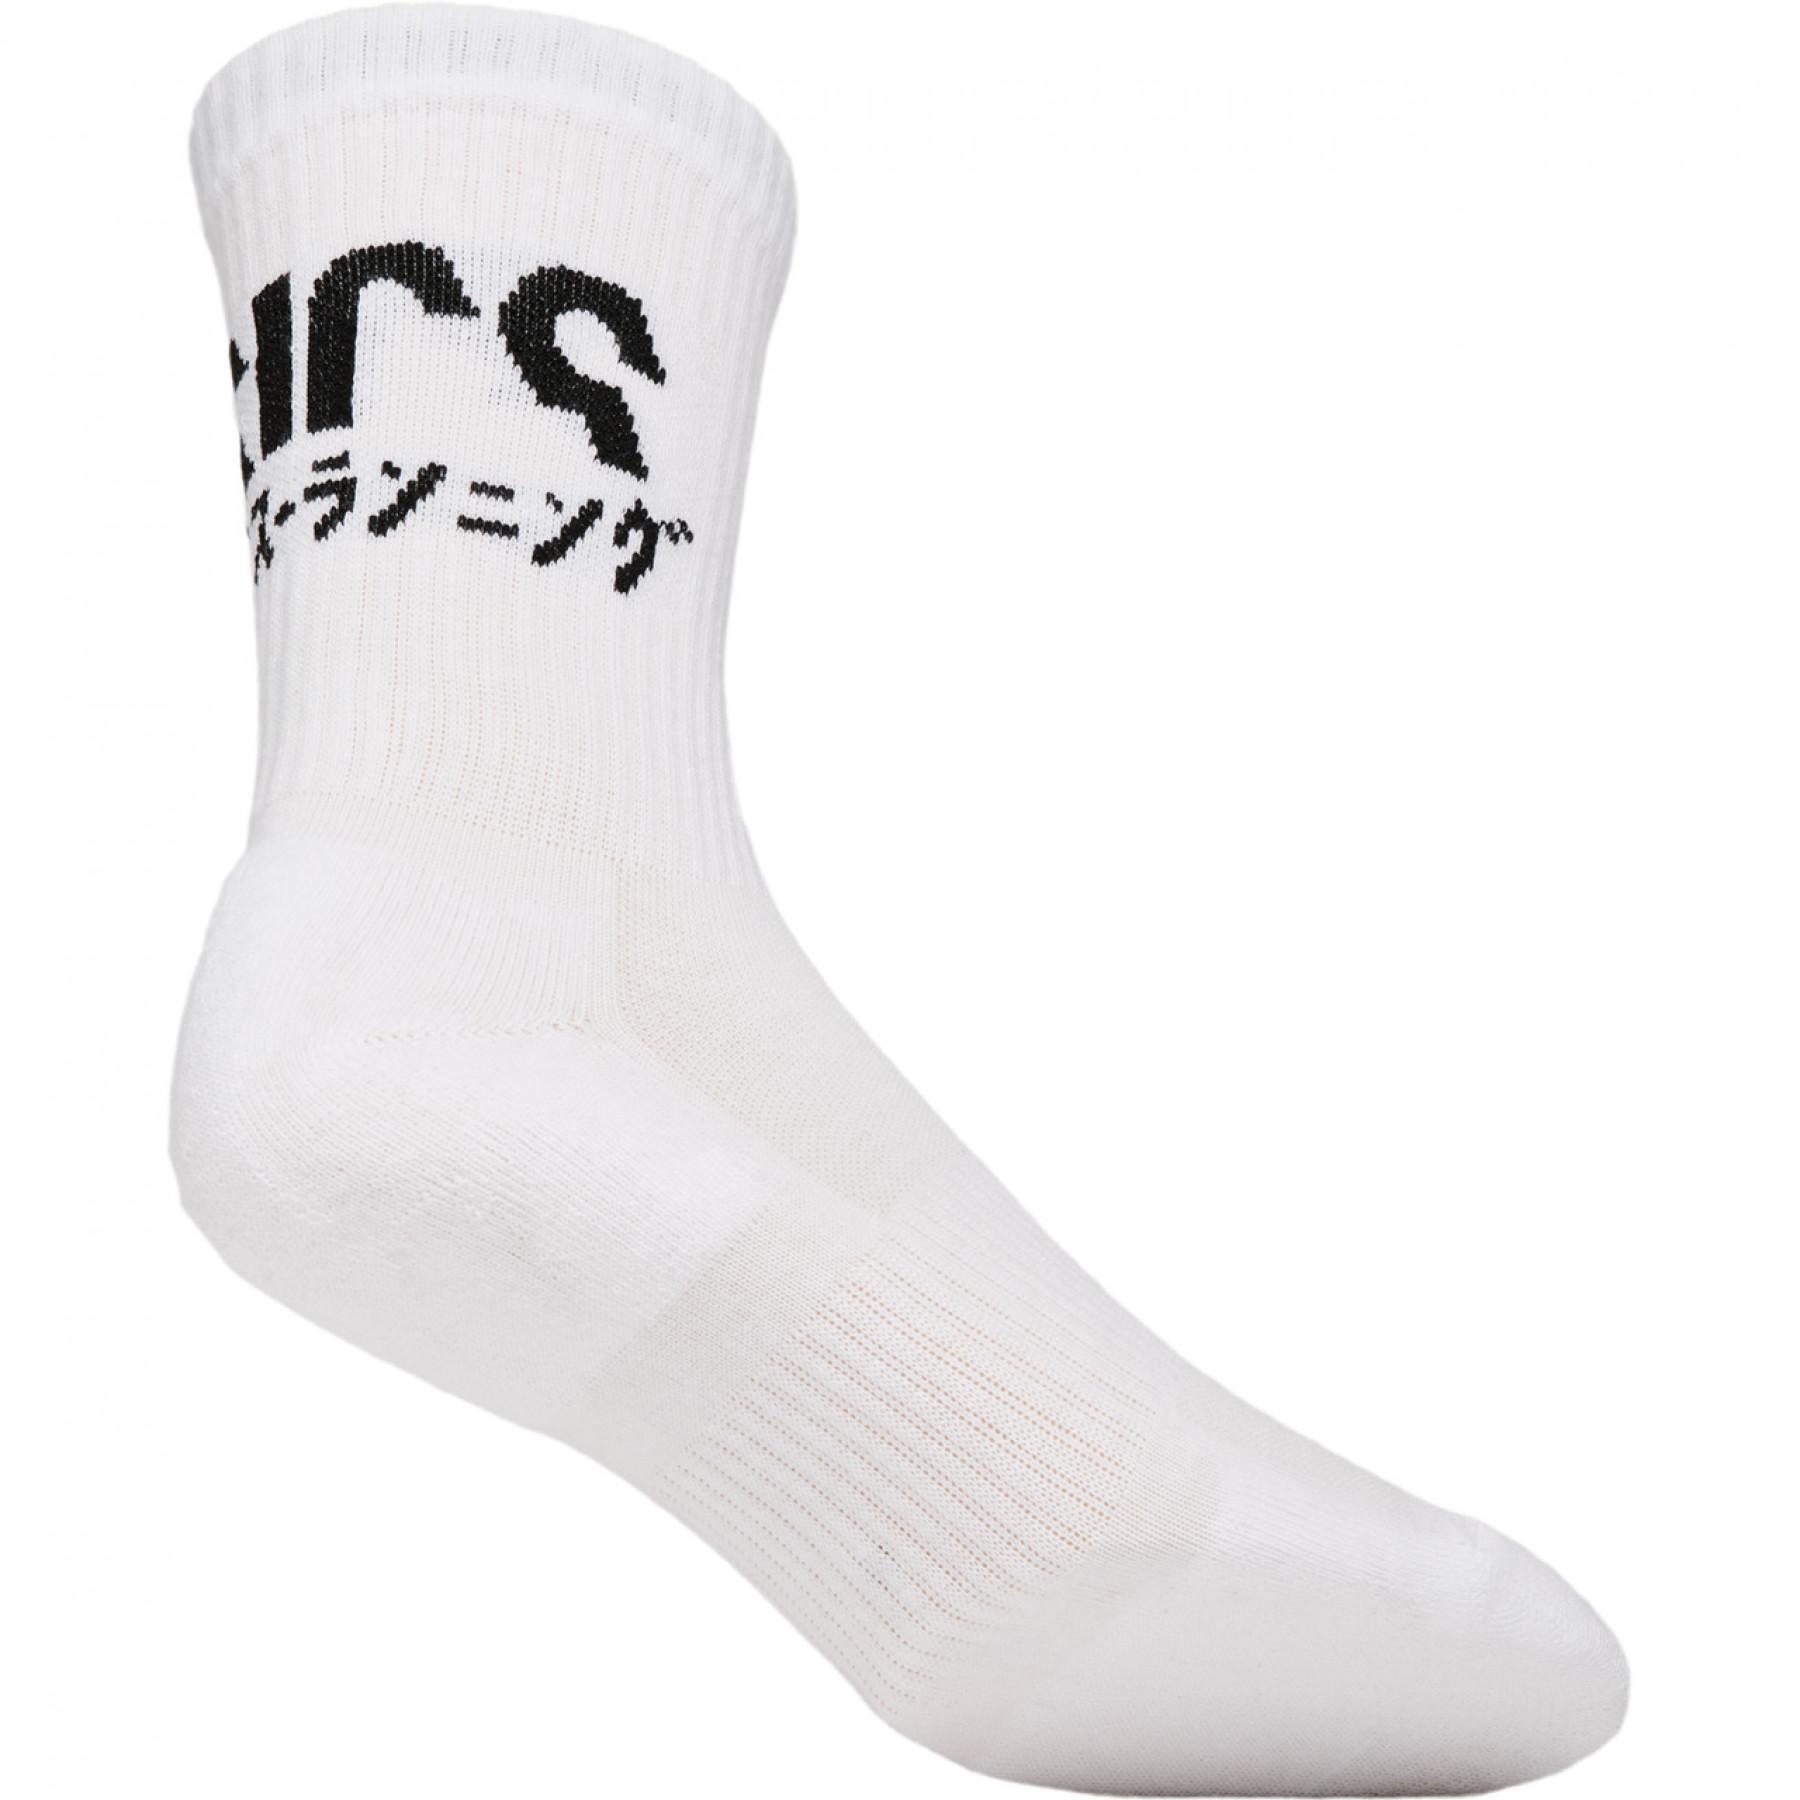 Socken Asics Katakana (2 paires)